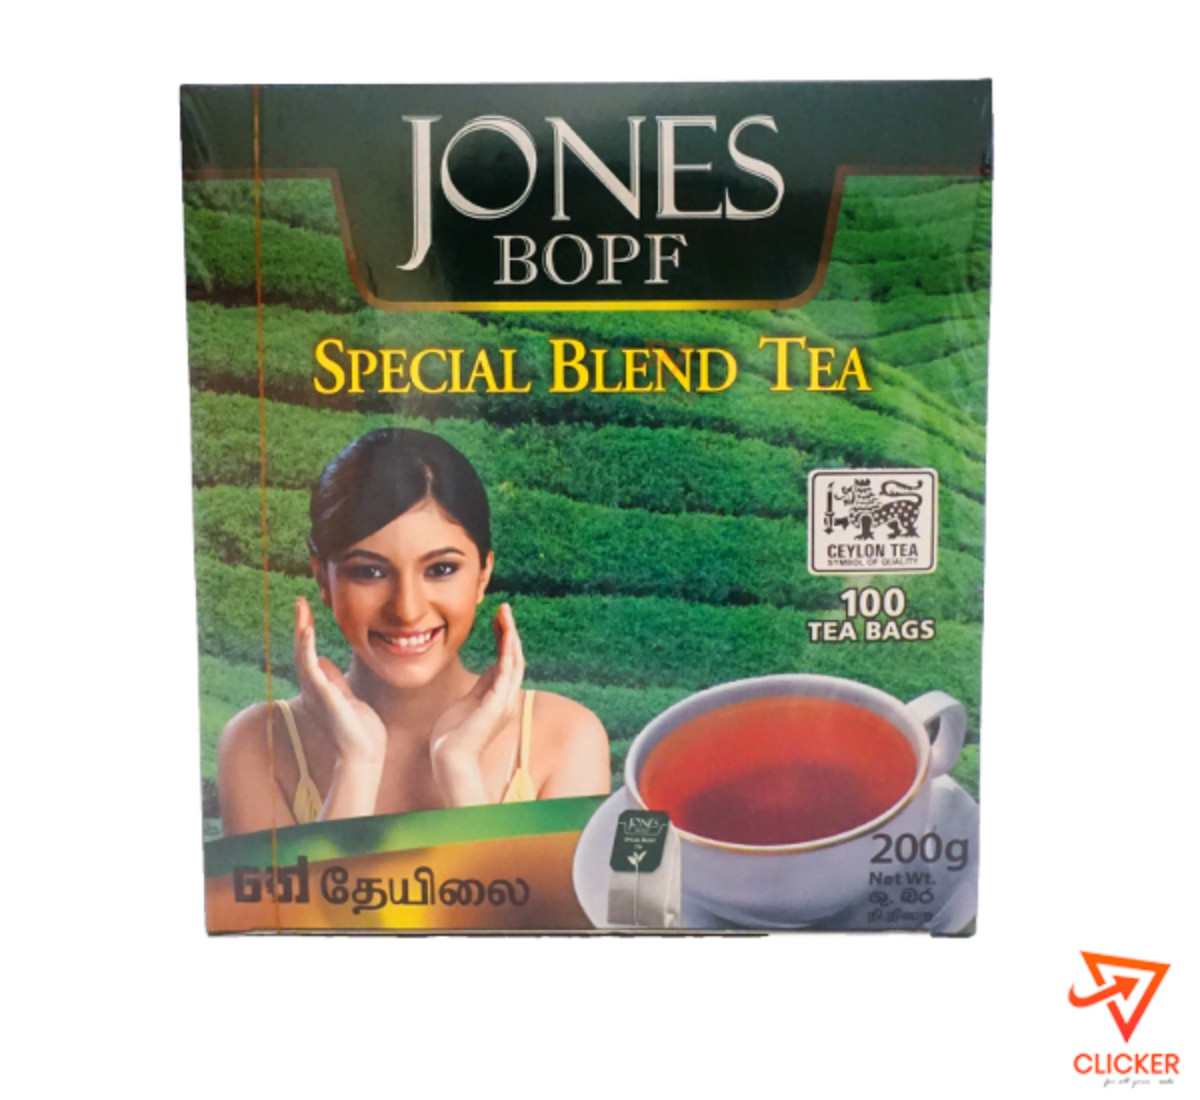 Clicker product 200g JONES BOPF Special Blend Tea 917